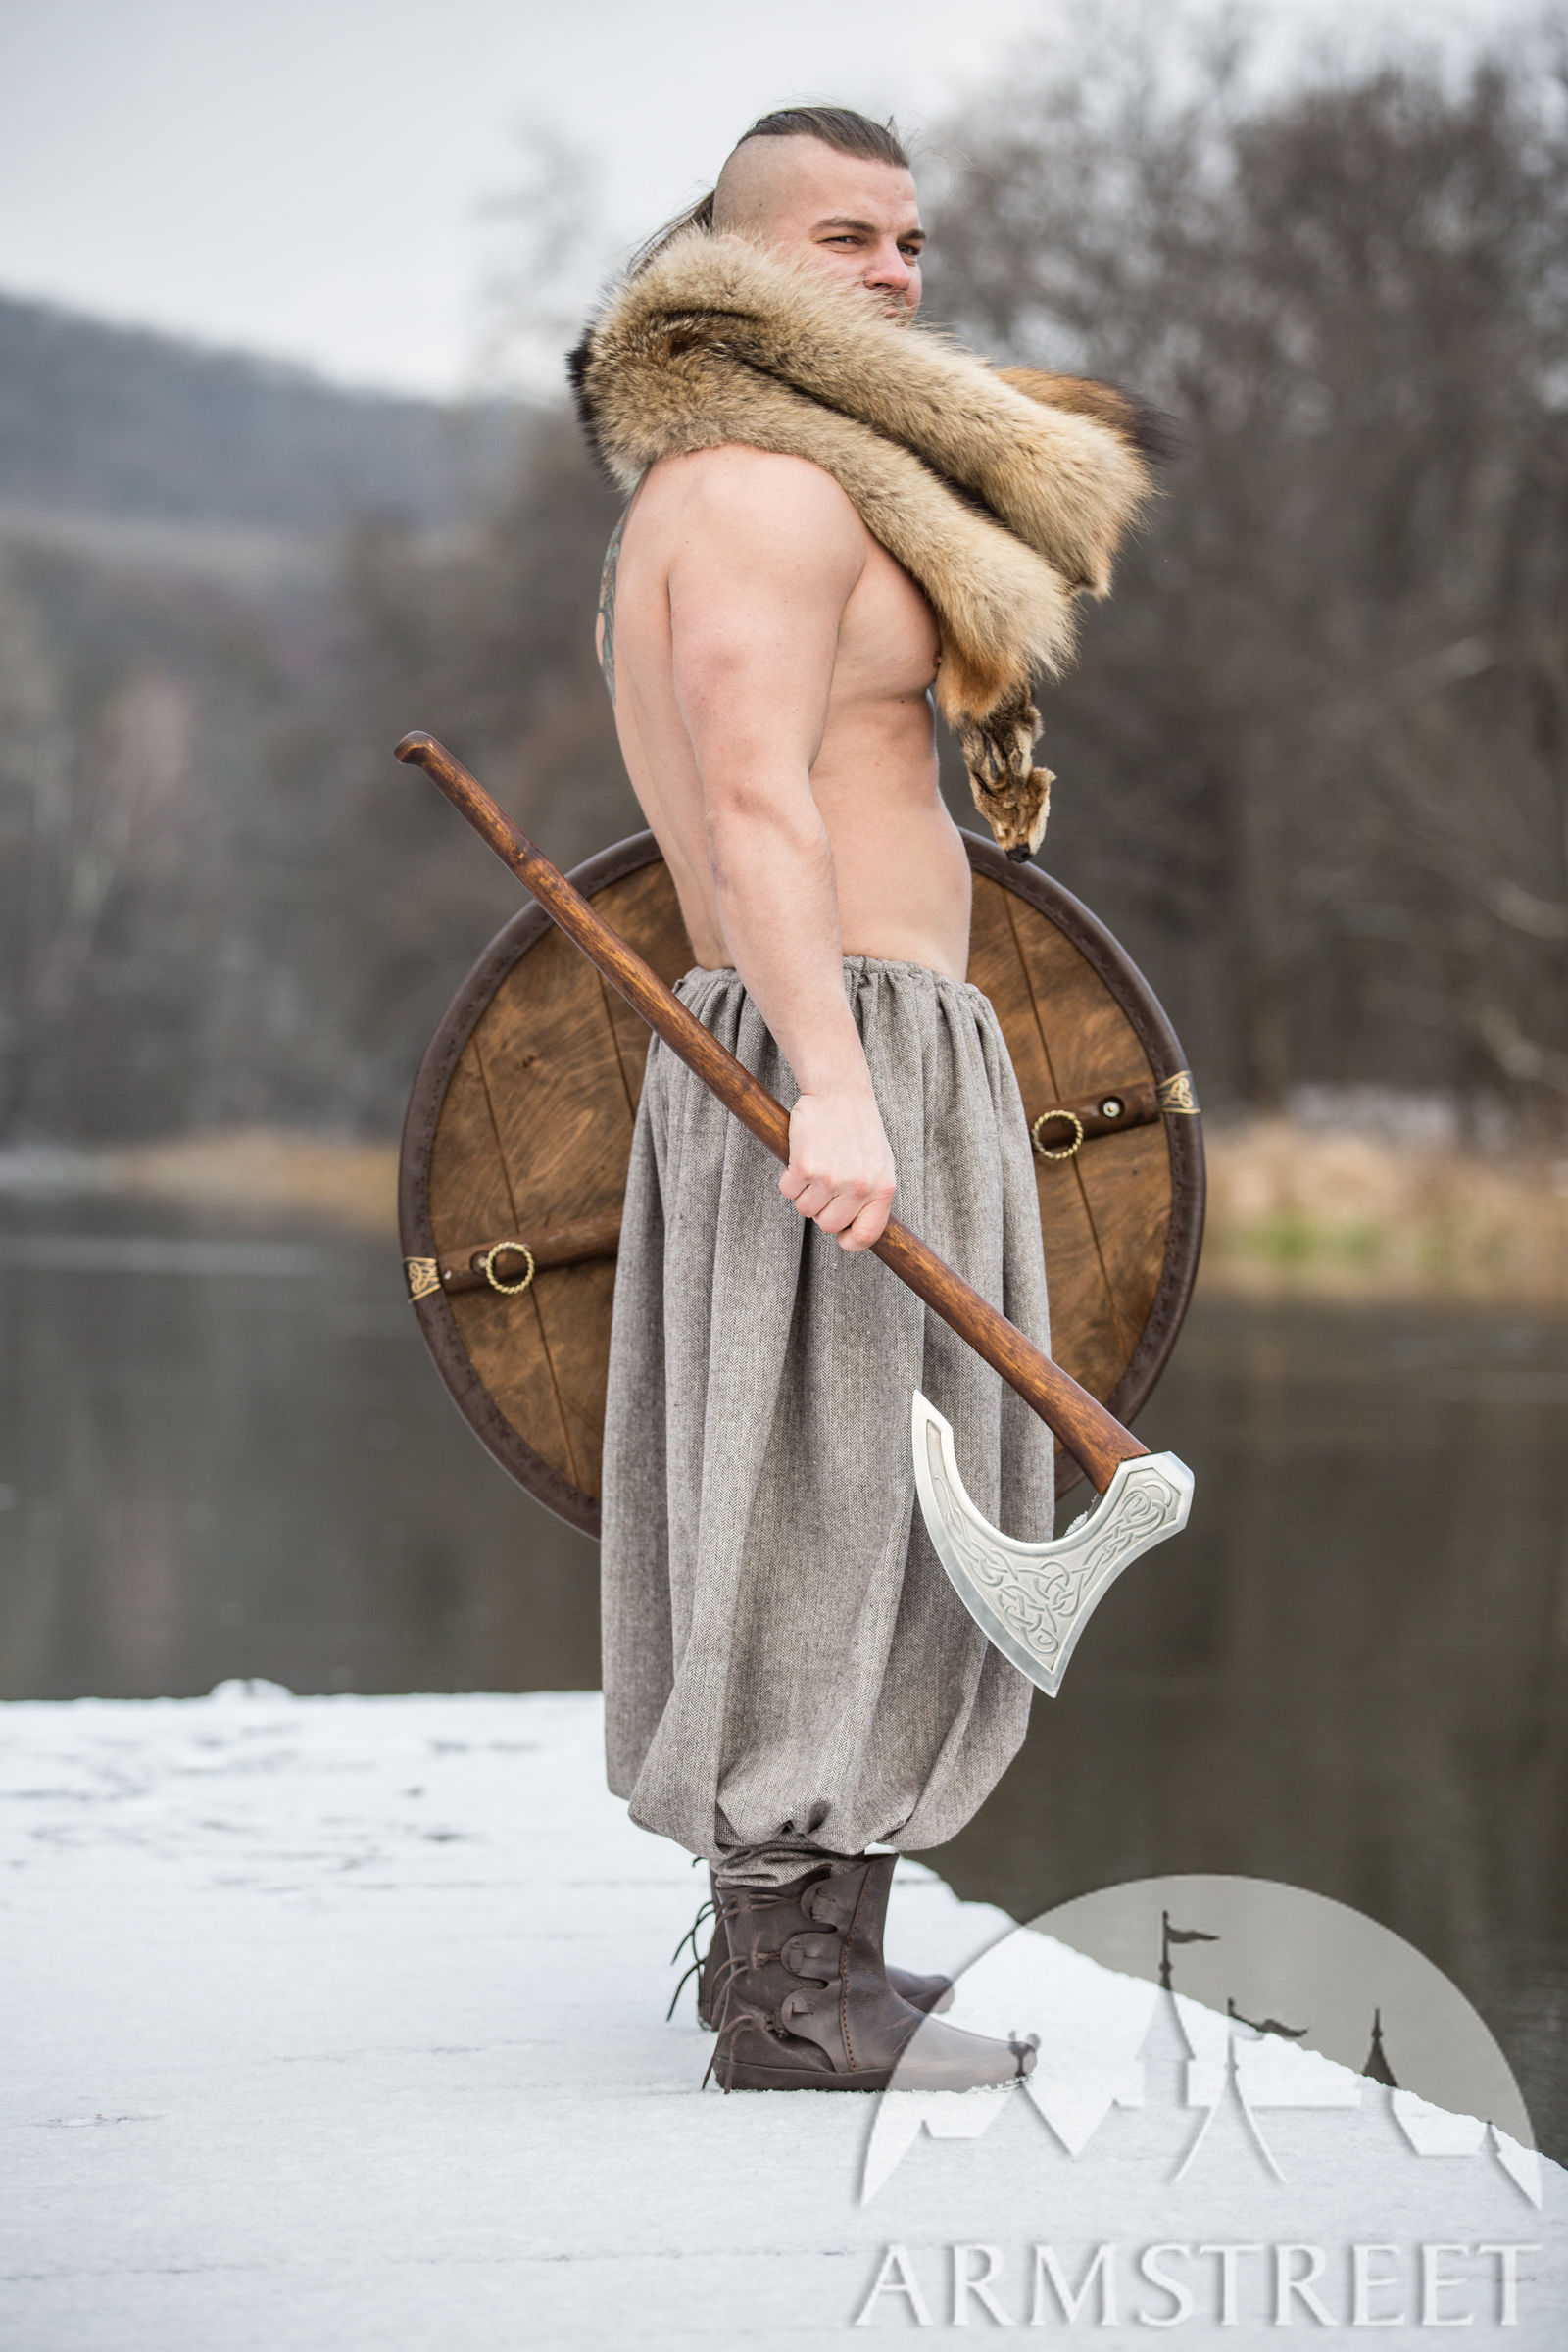 Wool Blend Viking Pants “Olegg the Mercenary” for sale. Available in ...